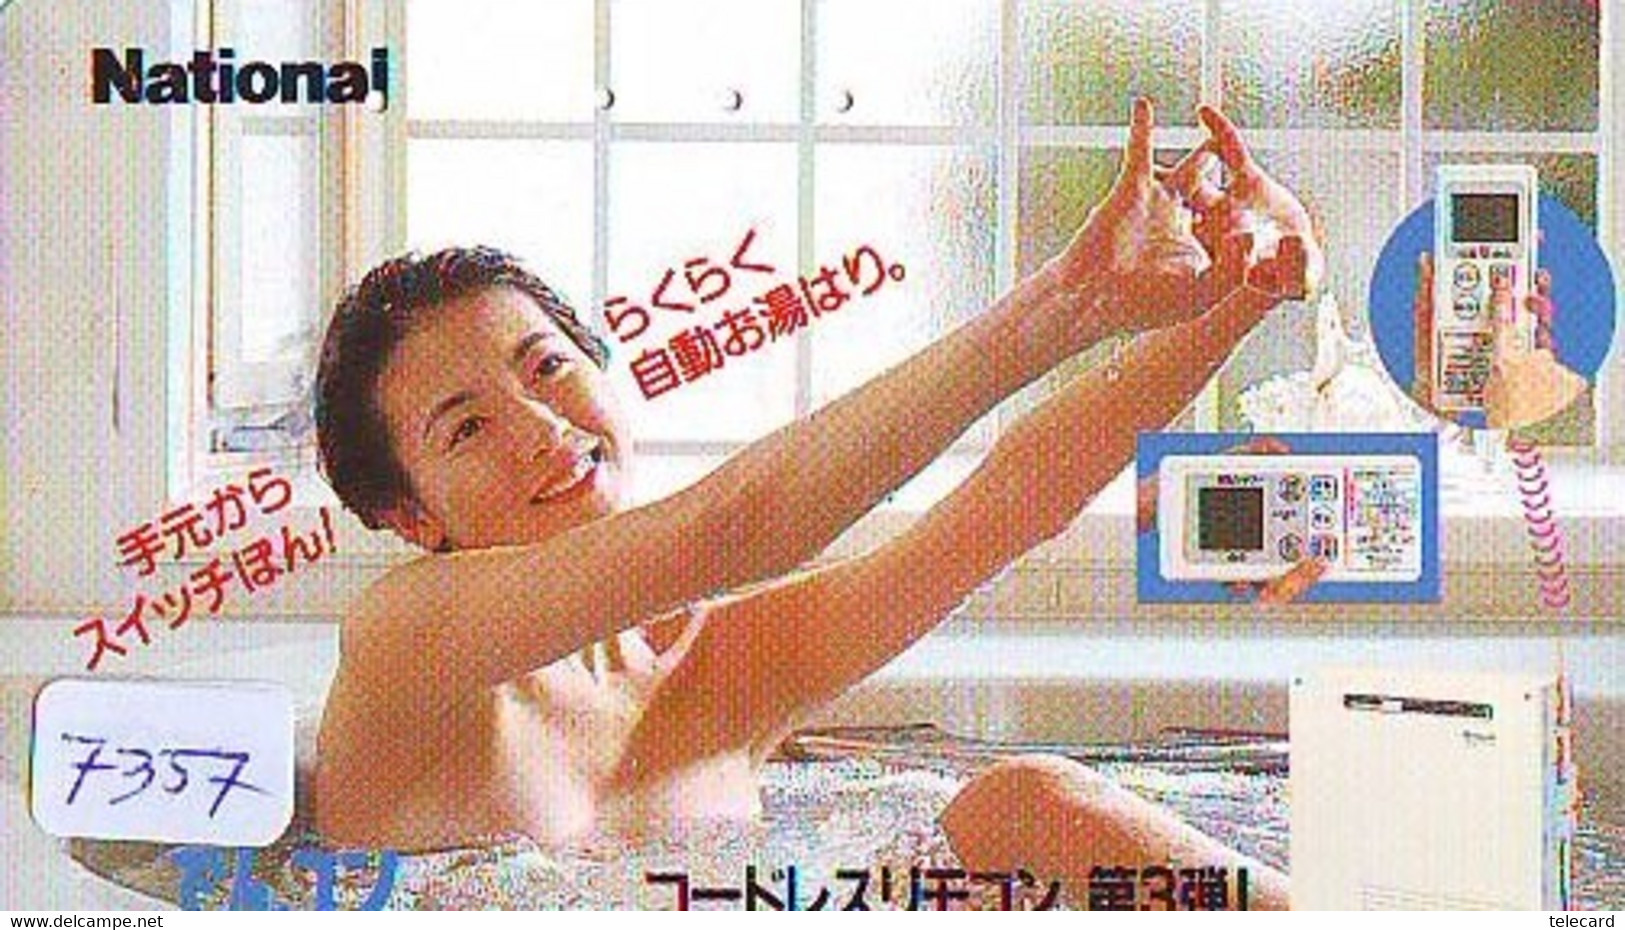 Télécarte Japon * FEMME EROTIQUE (7357) BATH * PHONECARD JAPAN * TELEFONKARTE *  BATHCLOTHES LINGERIE - Mode